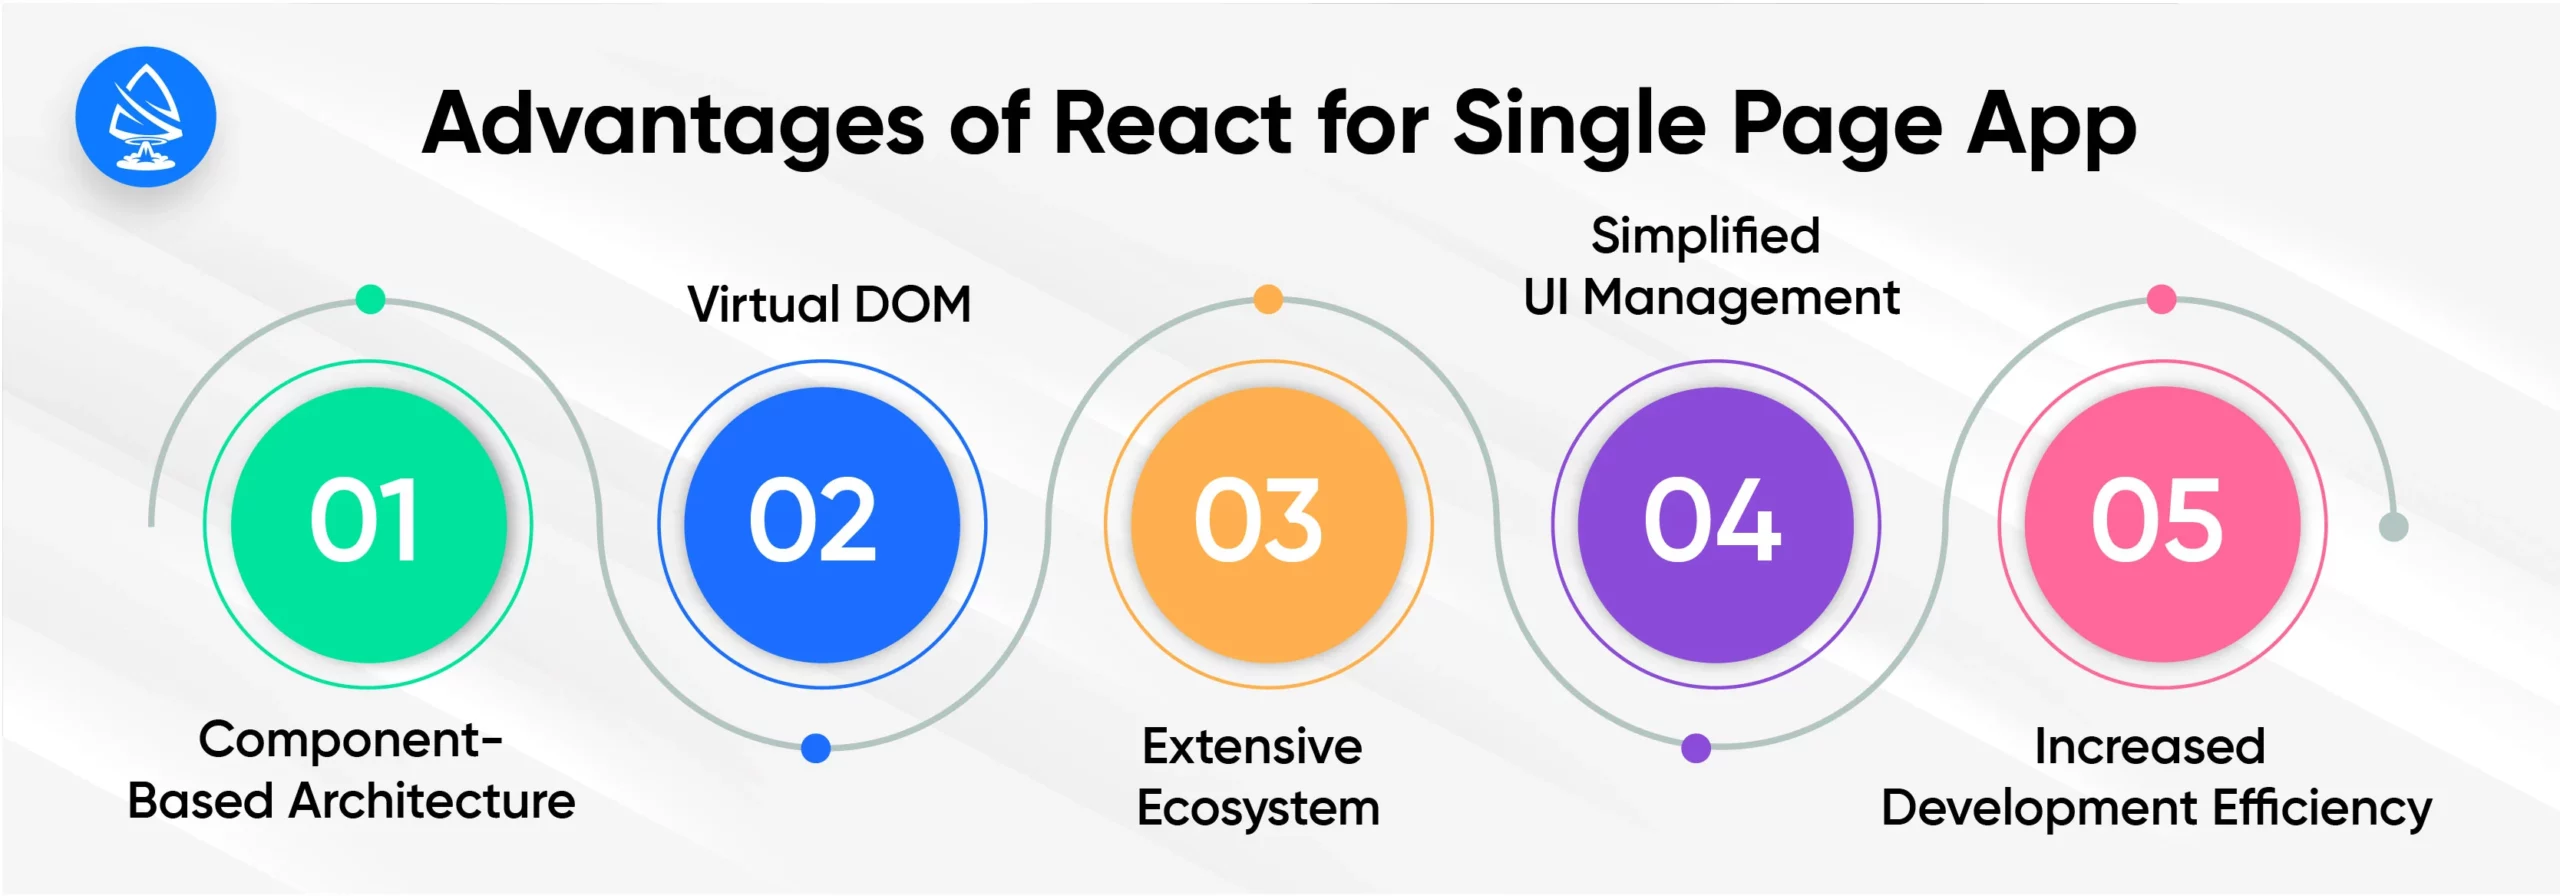 Advantages of ReactJS for Single Page App Development